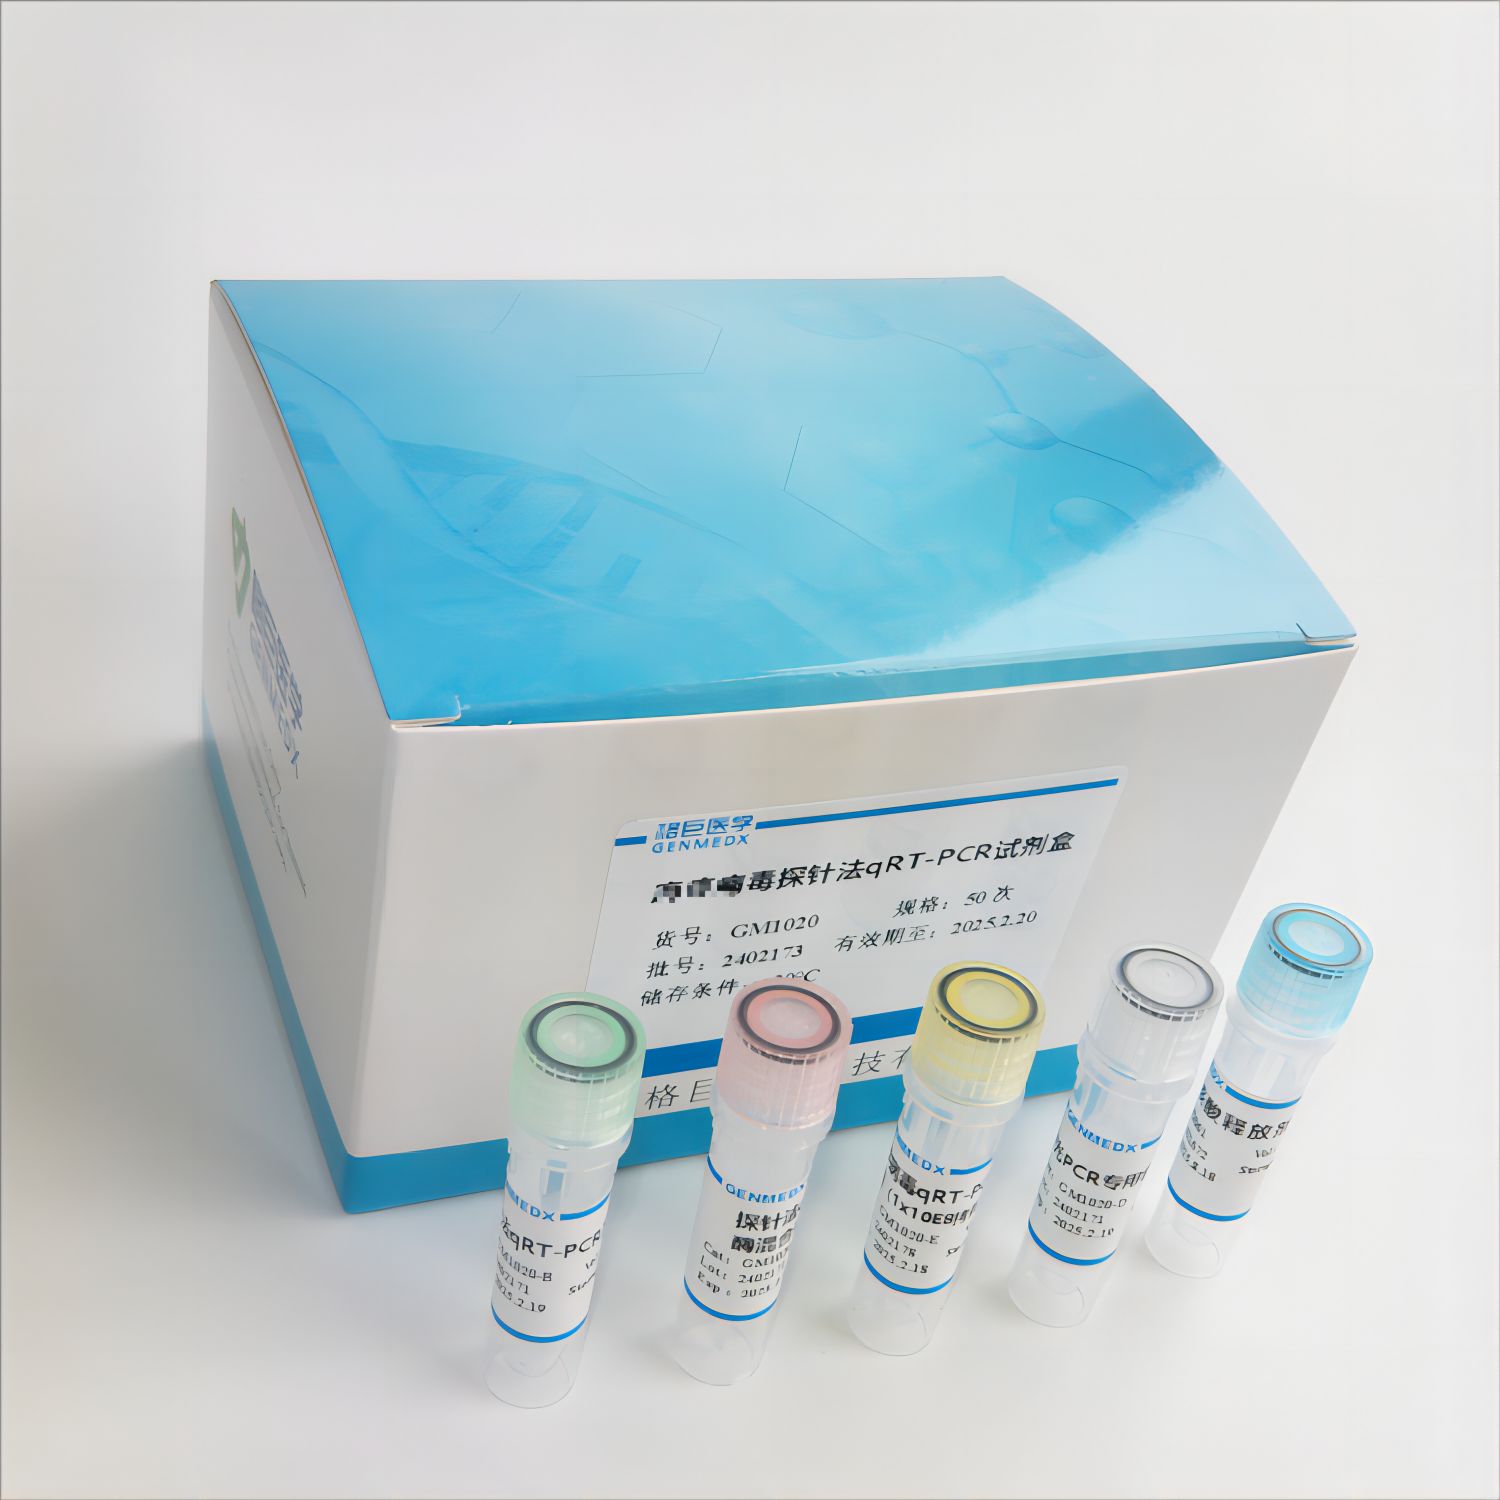 犬副流感病毒探针法荧光定量RT-PCR试剂盒